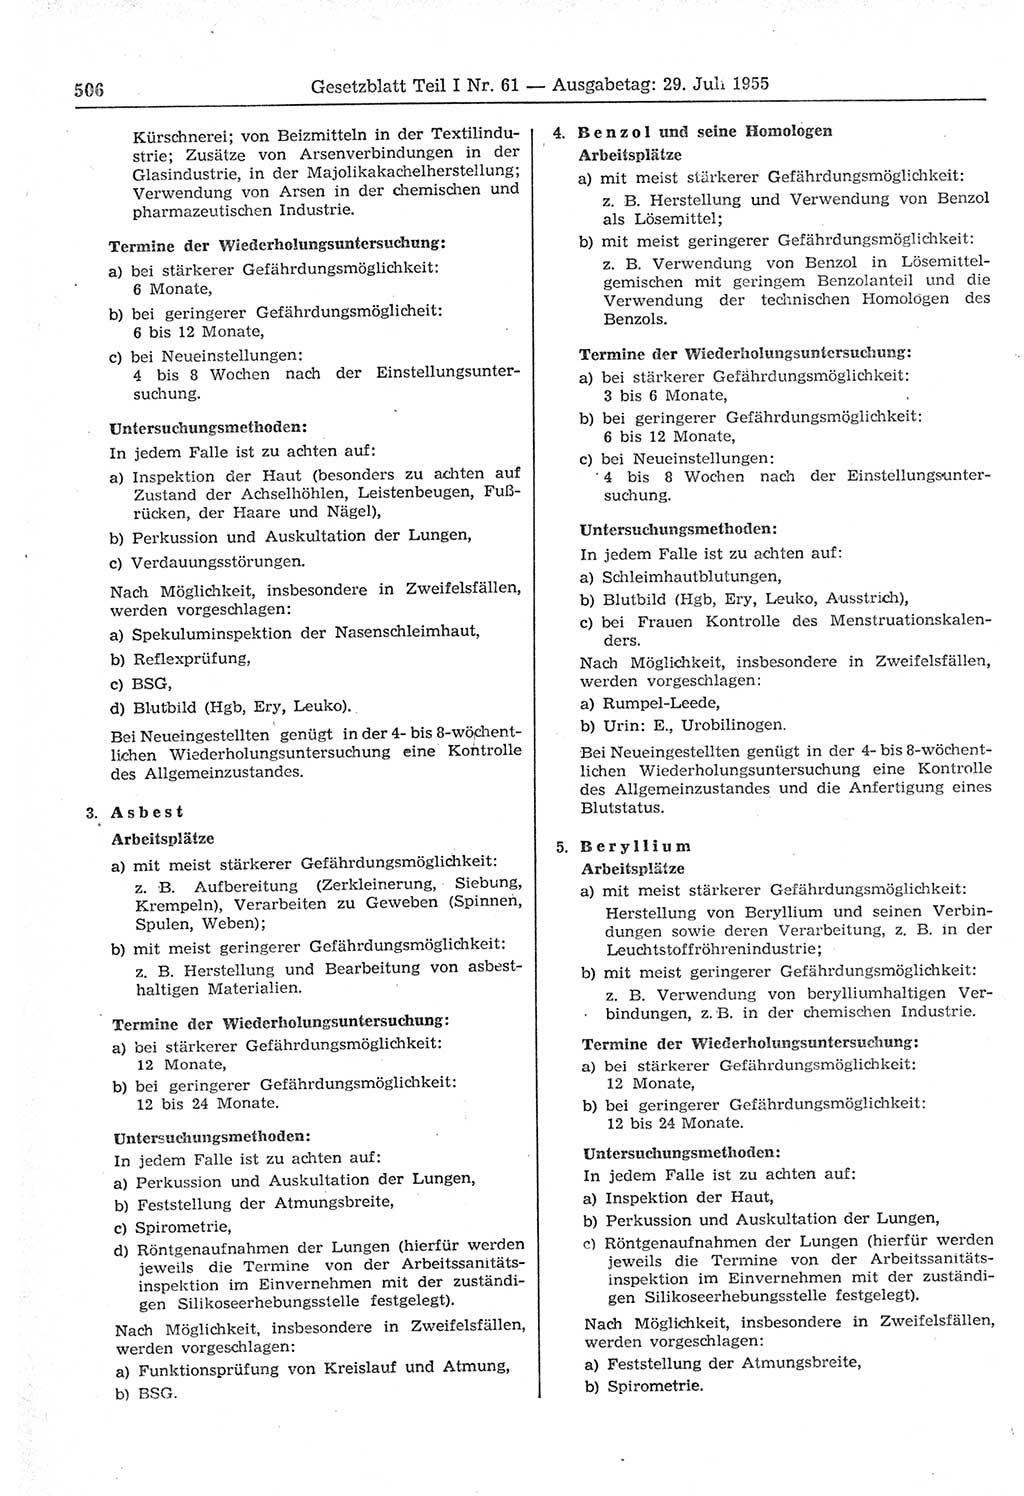 Gesetzblatt (GBl.) der Deutschen Demokratischen Republik (DDR) Teil Ⅰ 1955, Seite 506 (GBl. DDR Ⅰ 1955, S. 506)